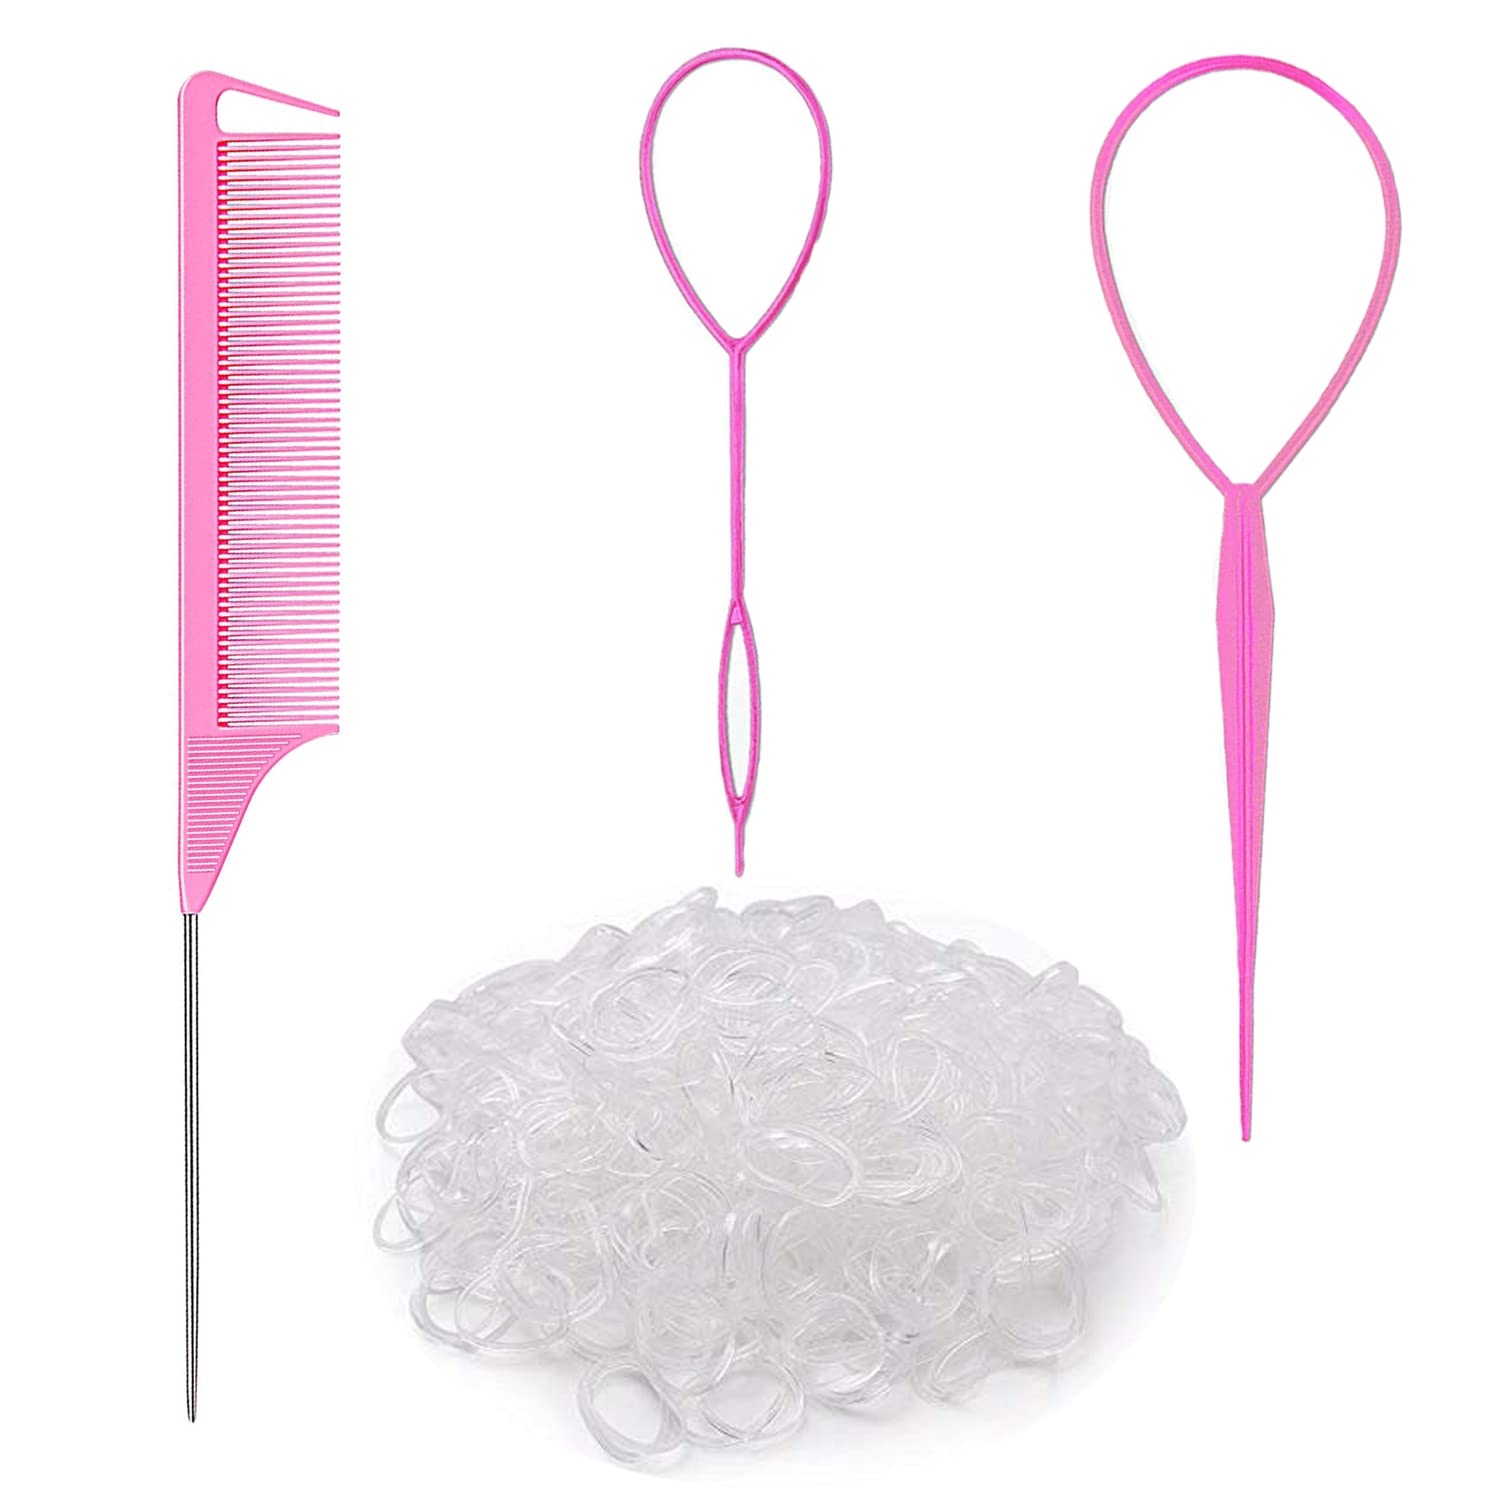 Topsy Tail Hair Tools, 4 Pcs Topsy Tail Hair Loop Styling Tool, Hair Flip  Tool with 10pcs Hair Ties, Pink 